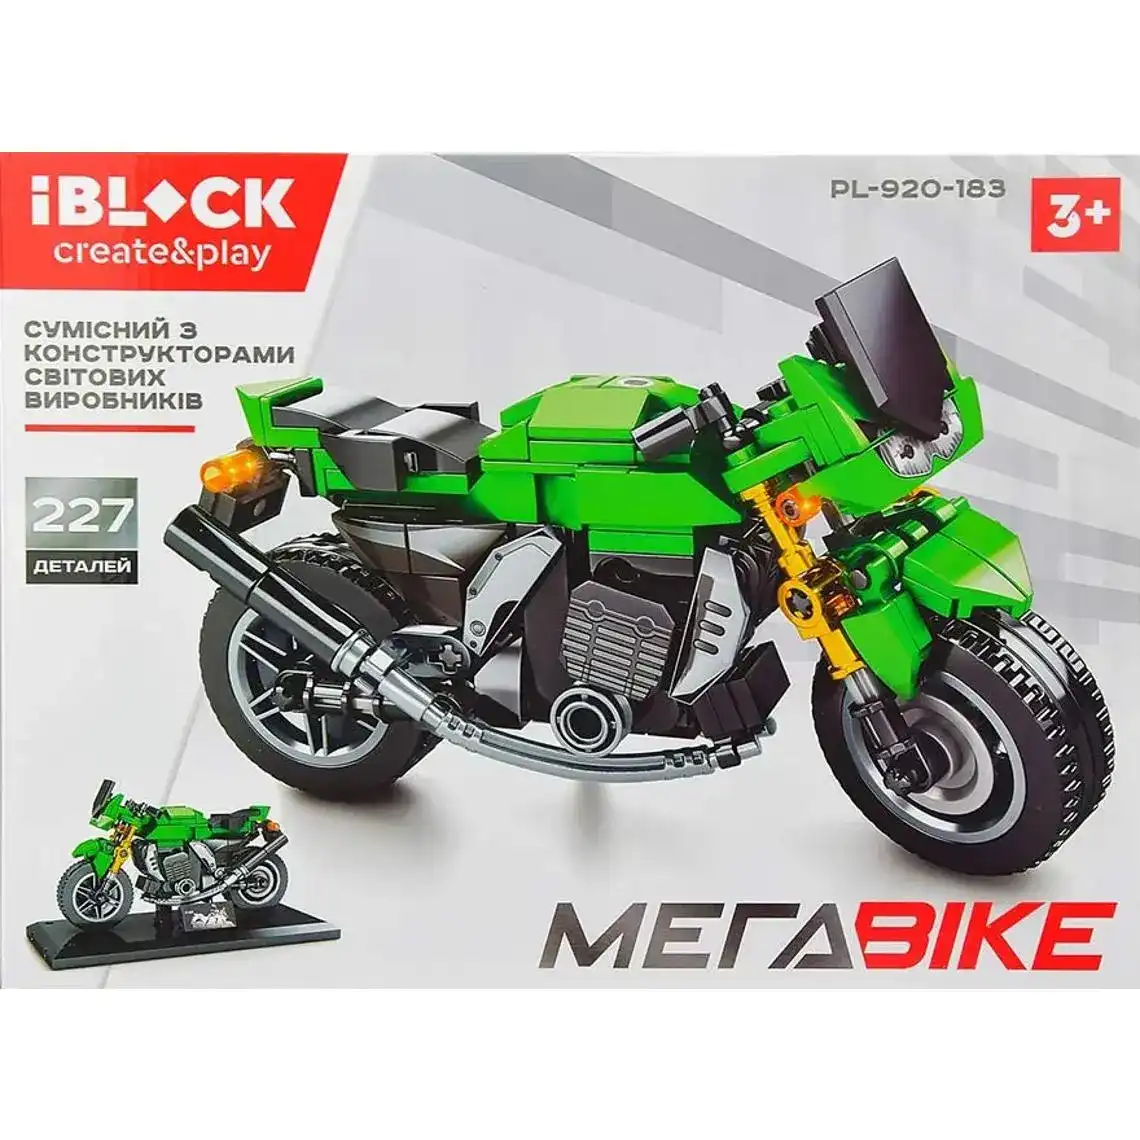 Іграшка Iblock конструктор мотоцикл в асортименті